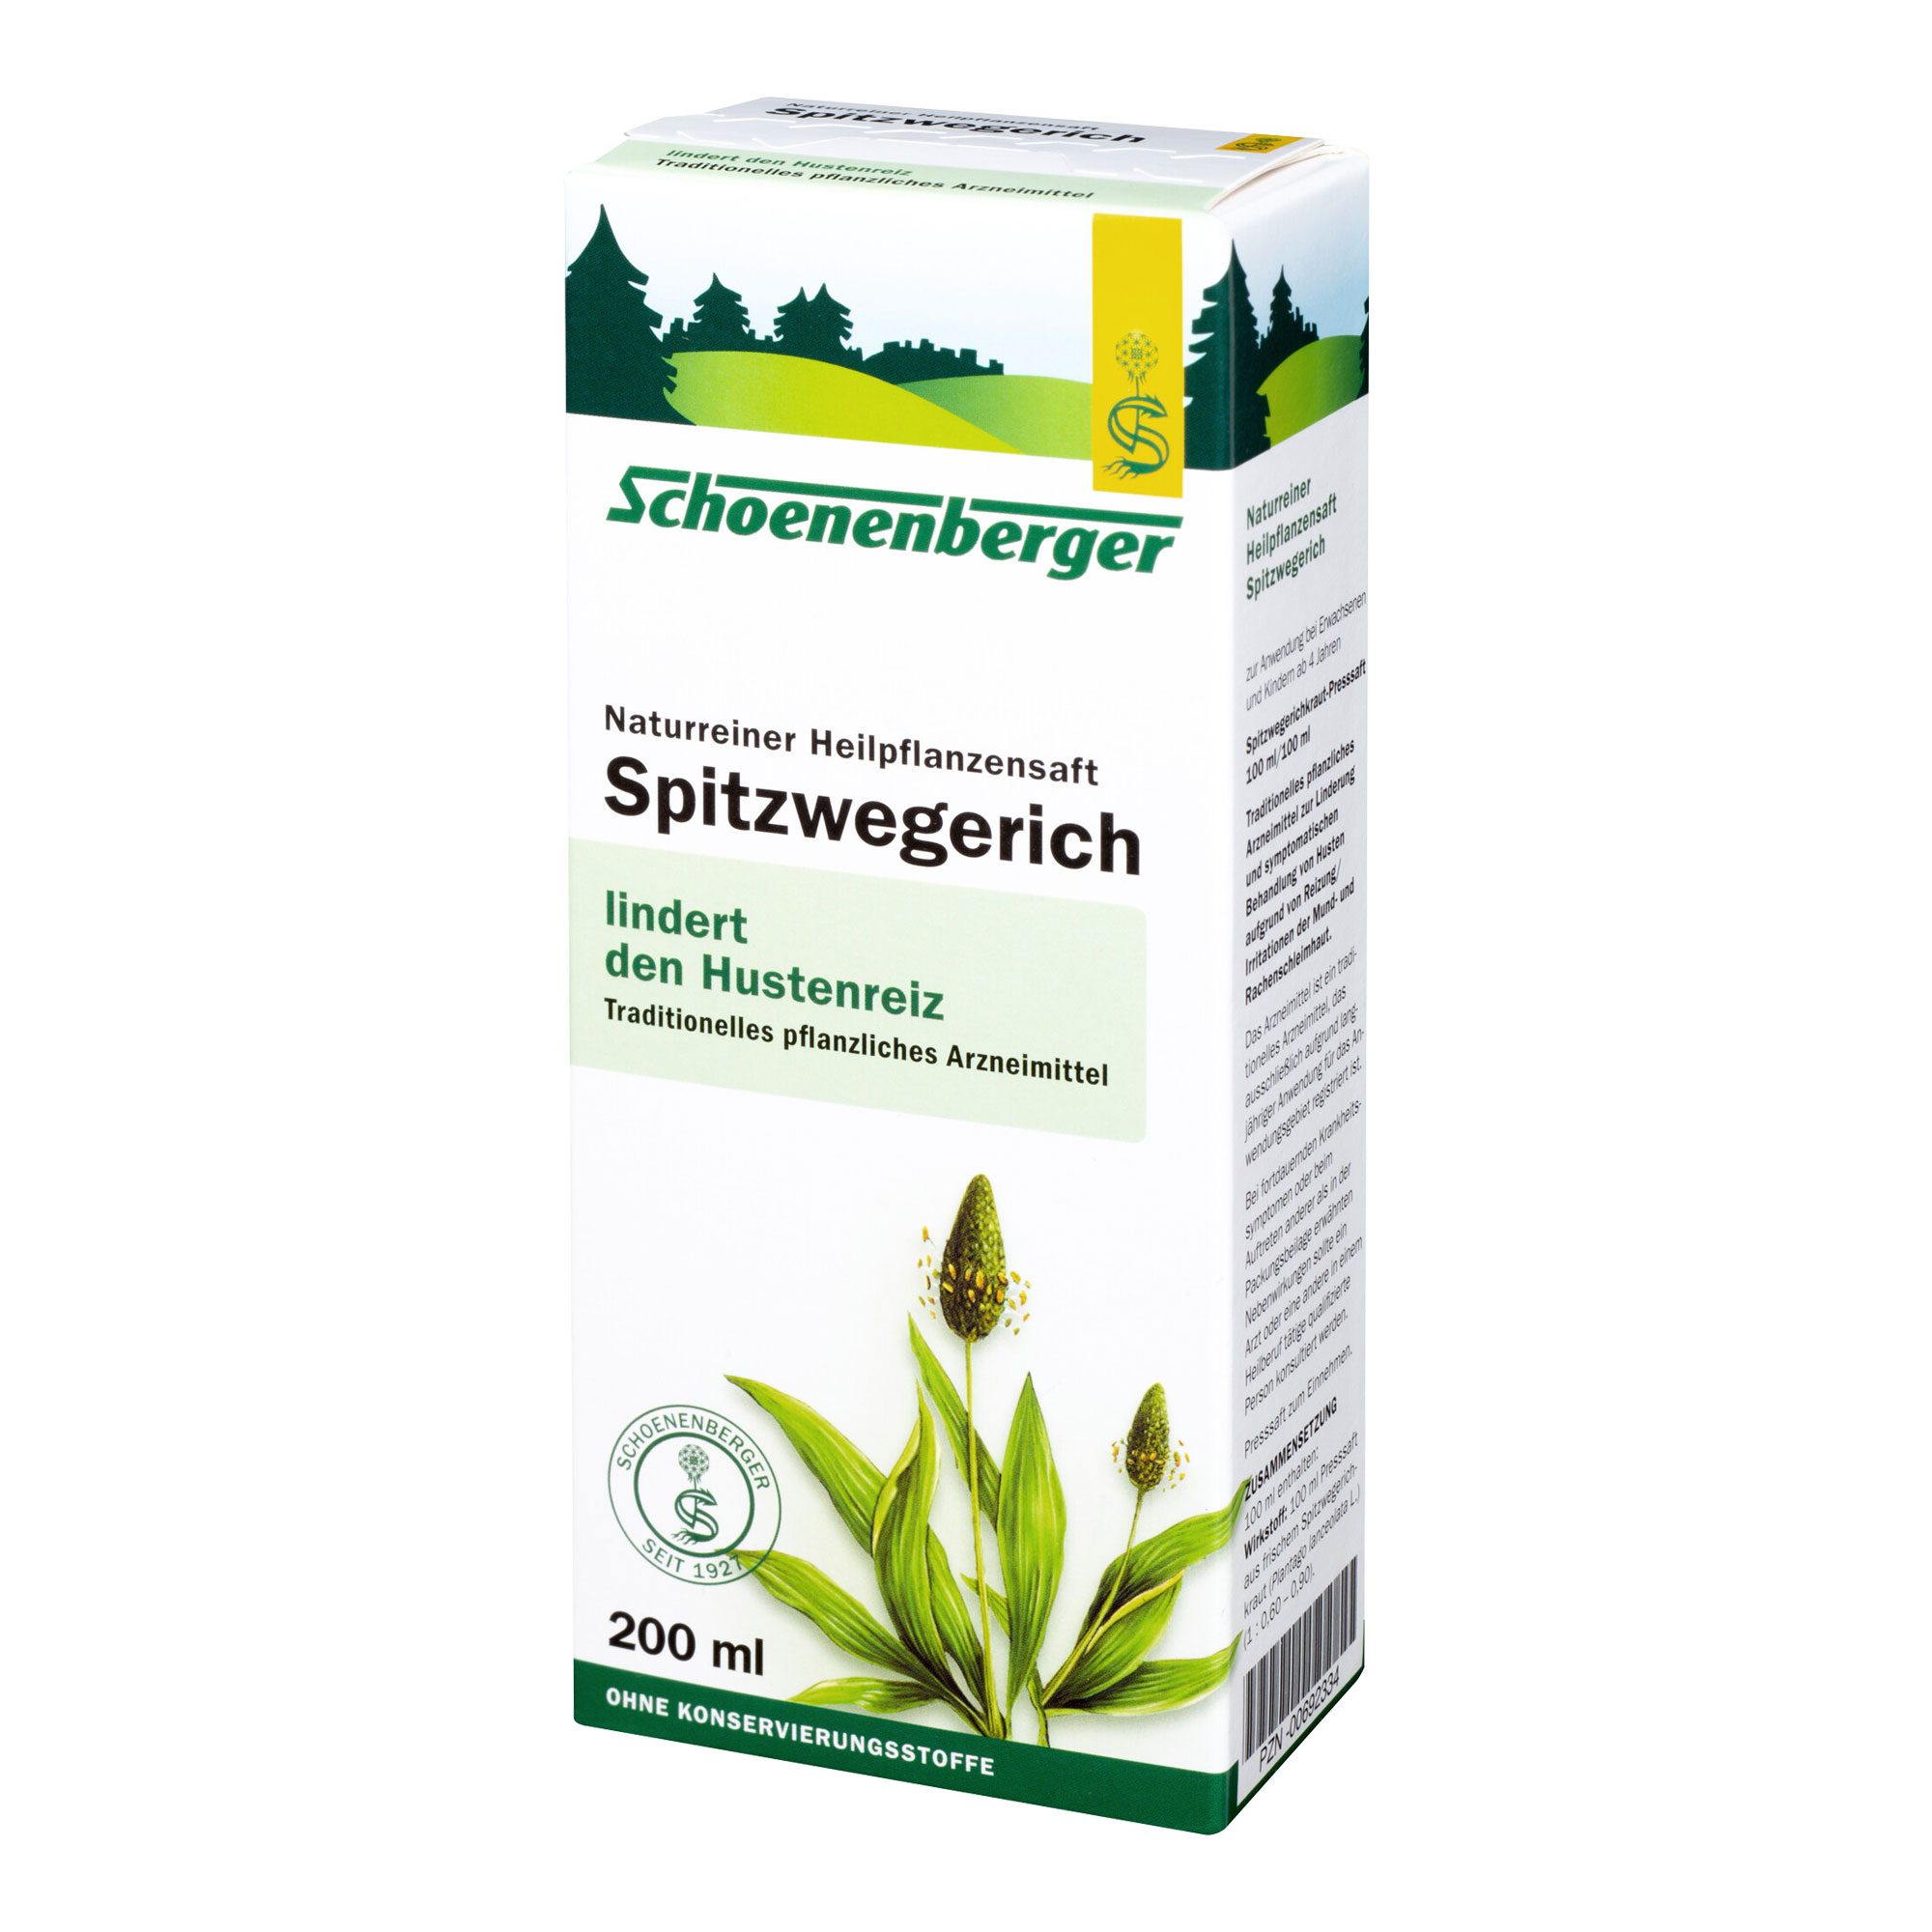 Traditionelles pflanzliches Arzneimittel zur Linderung und symptomatischen Behandlung von Husten aufgrund von Reizung/ Irritationen der Mund- und Rachenschleimhaut.